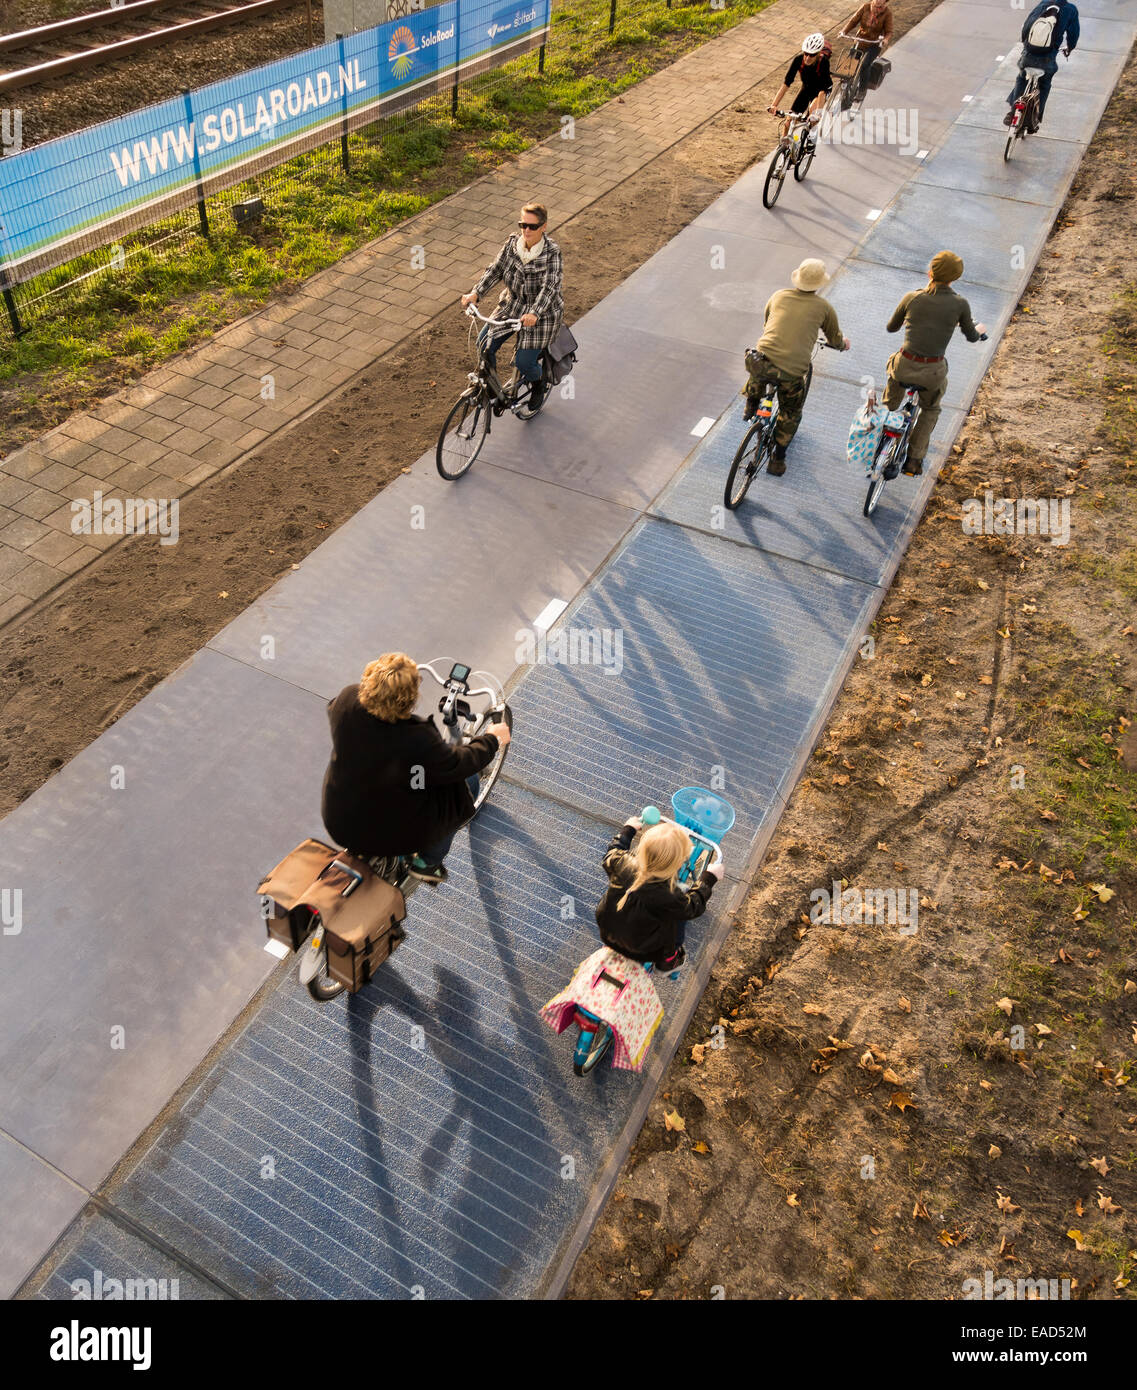 Krommenie, Niederlande. 12. November 2014. Foto: 1. November 2014. Weltweit erste Radweg aus Solarzellen mit Radfahrern auf belebten Radweg hergestellt. Zunächst nur 70 m (230ft) lang. Oktober 2014 in Krommenie, 25 km (15 Meilen) nördlich von Amsterdam installiert. Hergestellt aus Betonplatten von 2,5 von 3,5 Metern (6.5x10ft) mit einer transluzenten Deckschicht aus gehärtetem Glas, das etwa 1 cm dick ist. Unter dem Glas sind kristalline Silizium-Solarzellen. Der erste Abschnitt ist in der Lage, genügend Energie, um drei Häuser. Bildnachweis: Wiskerke/Alamy Live-Nachrichten Stockfoto